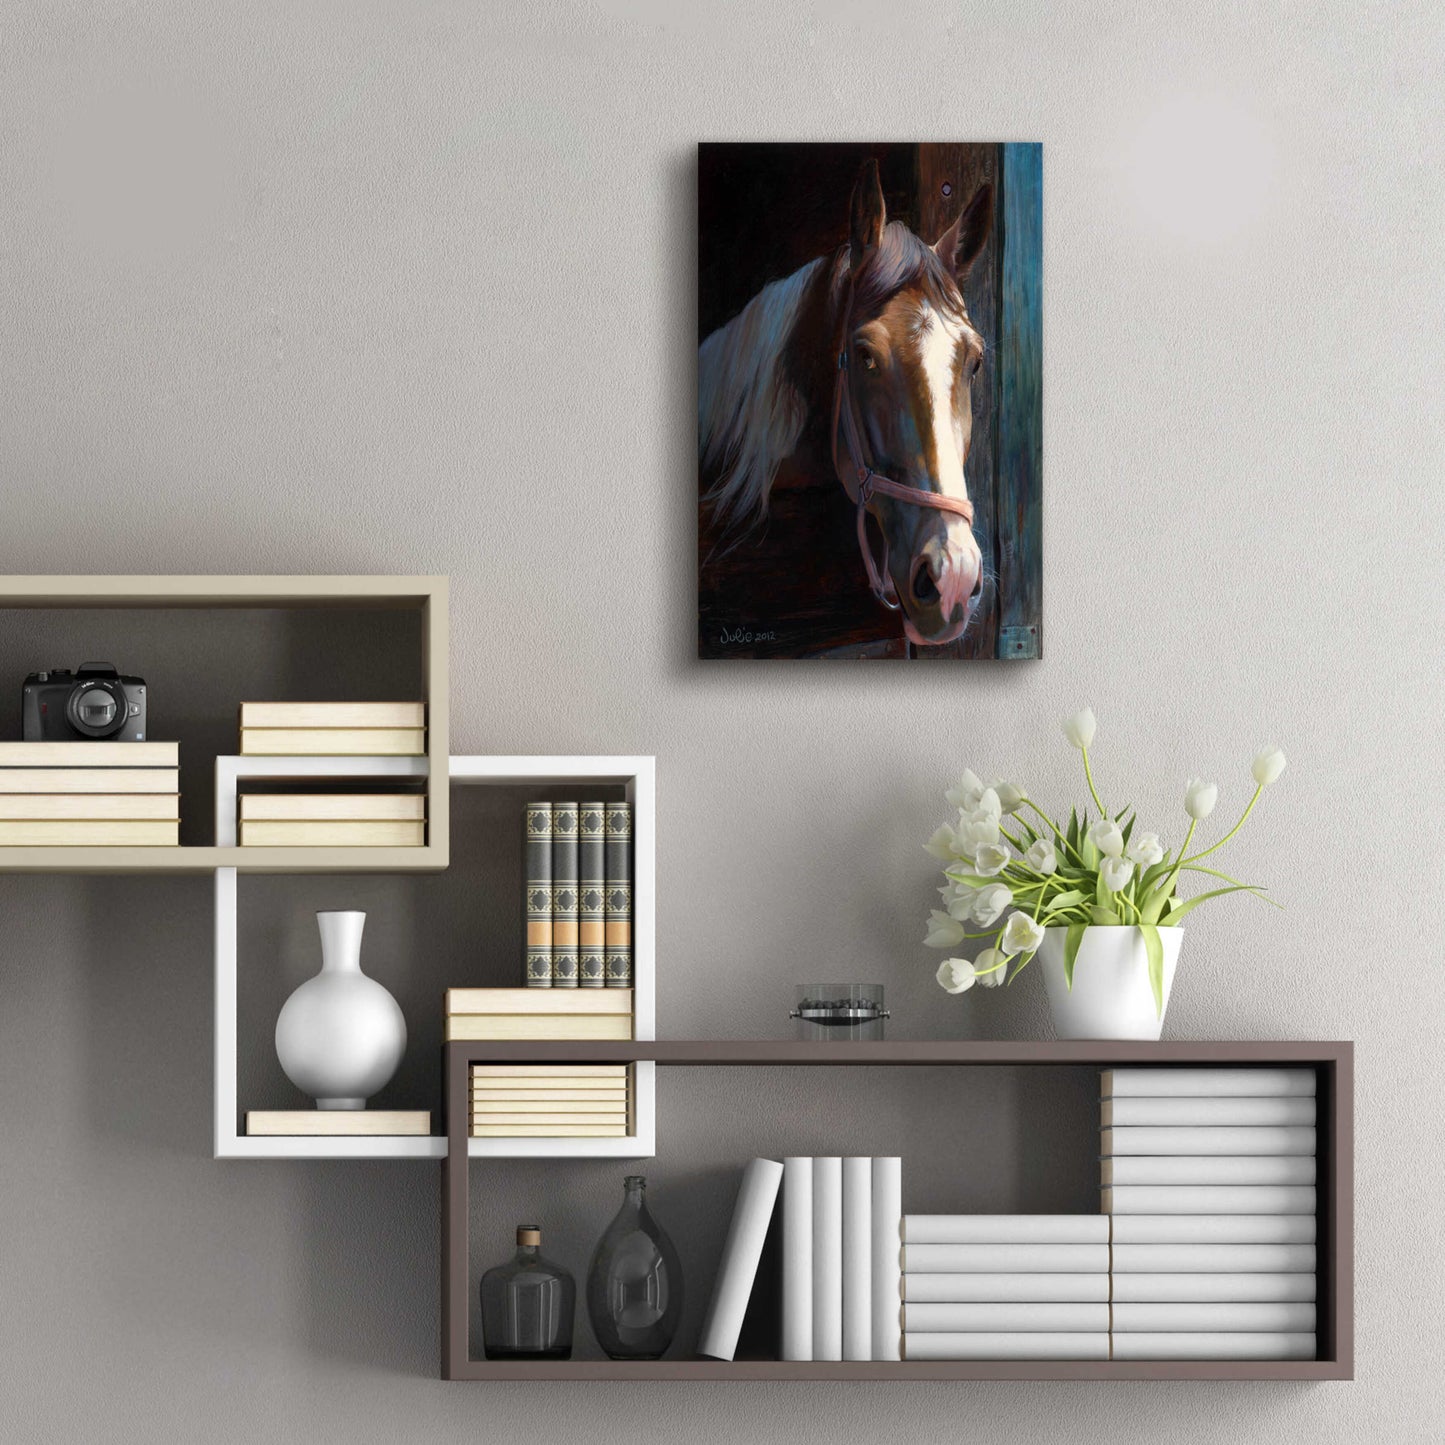 Epic Art 'Dark Horse' by Julie Bel, Acrylic Glass Wall Art,16x24